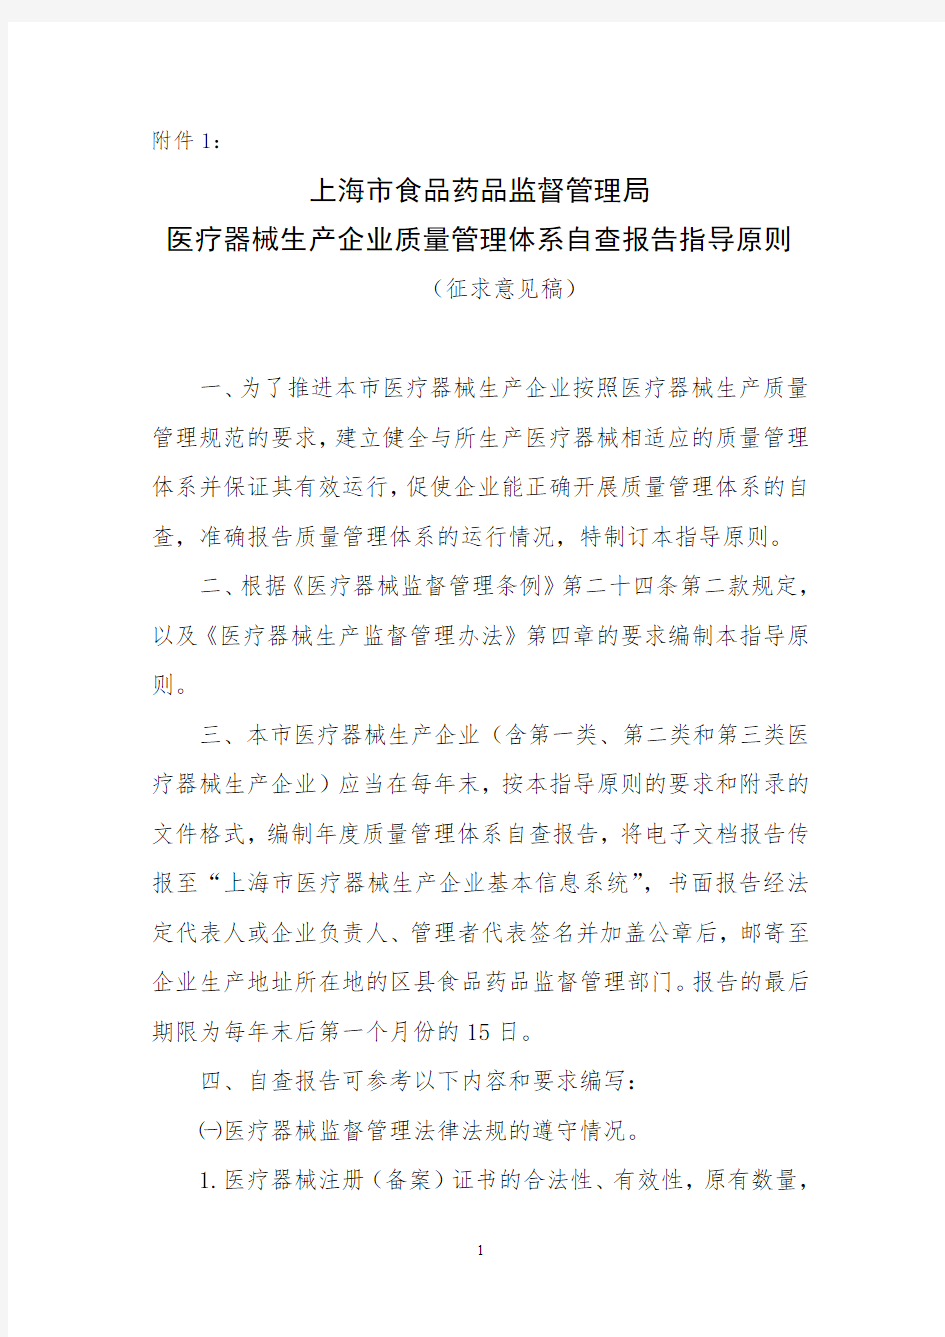 上海市食品药品监督管理局-医疗器械生产企业质量管理体系自查报告指导原则